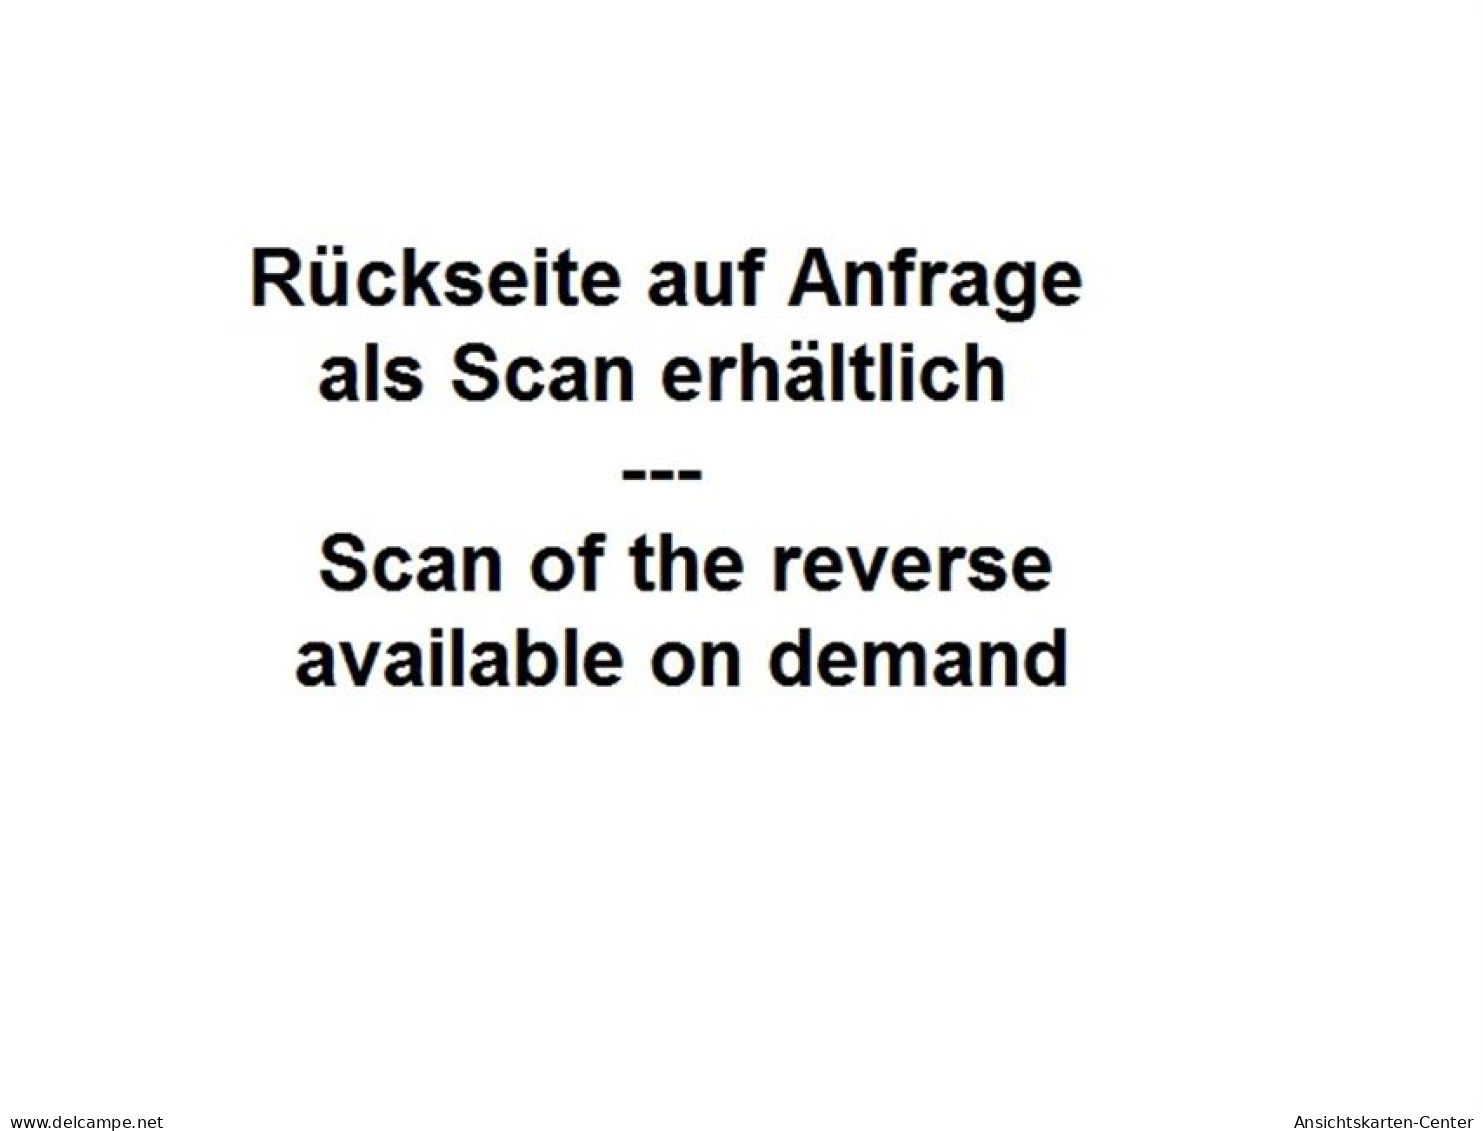 39052005 - Aachen, Reliefkarte Mit Muenster. Ungelaufen Fruehe Karte, Da Anschriftseite Noch Ungeteilt. Leicht Abgerund - Aachen